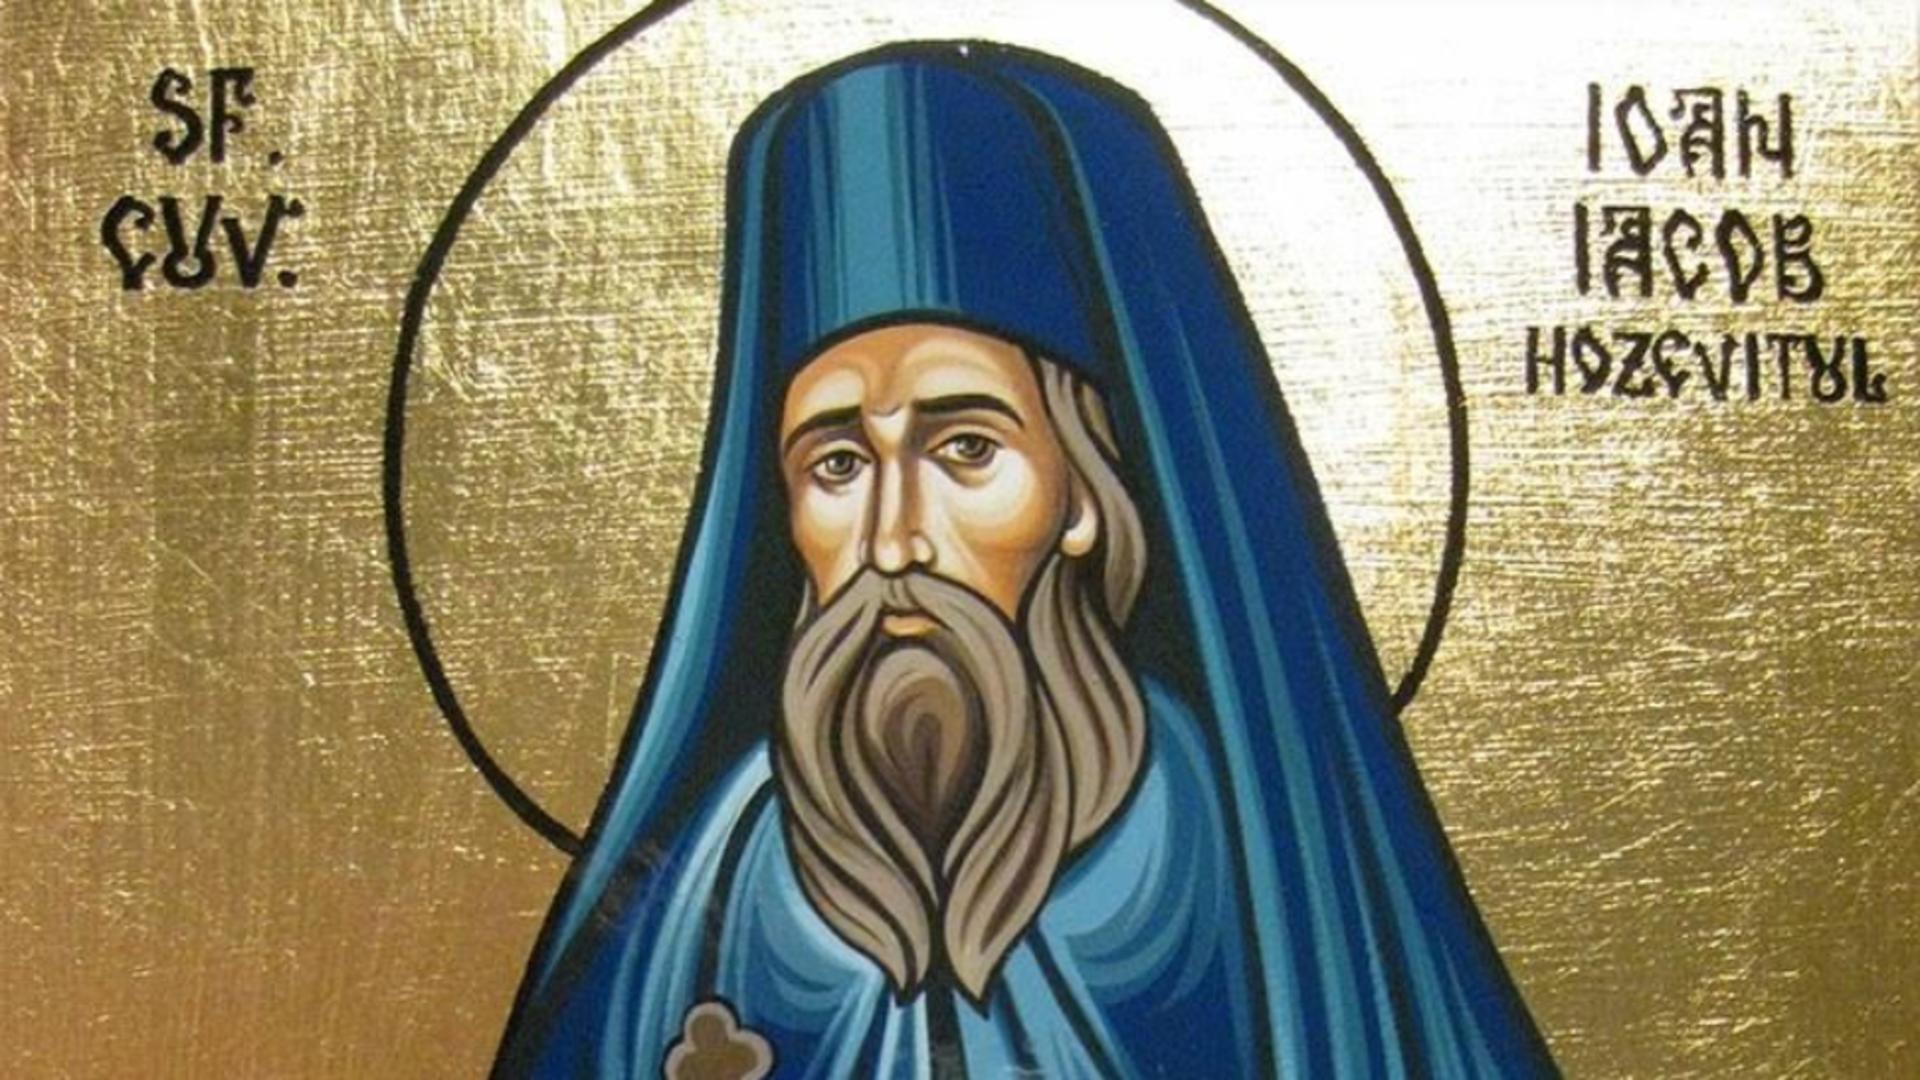 Sfântul Cuvios Ioan Iacob de la Neamţ (Hozevitul) este pomenit în calendarul creştin ortodox în ziua de 5 august